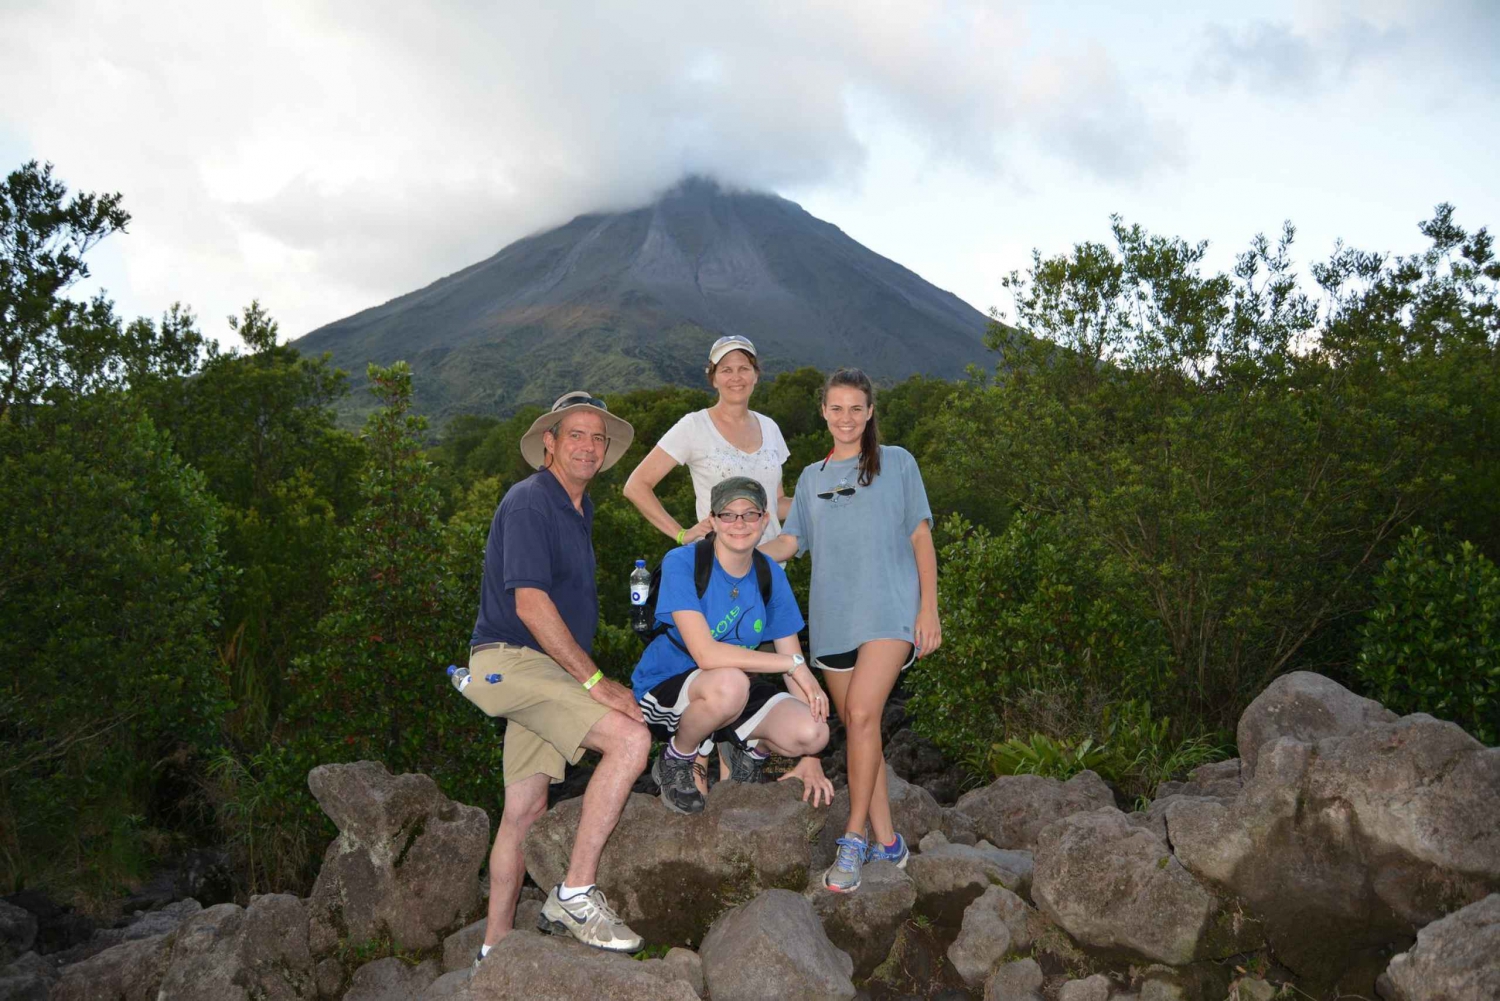 La Fortuna: escursione di mezza giornata al vulcano Arenal